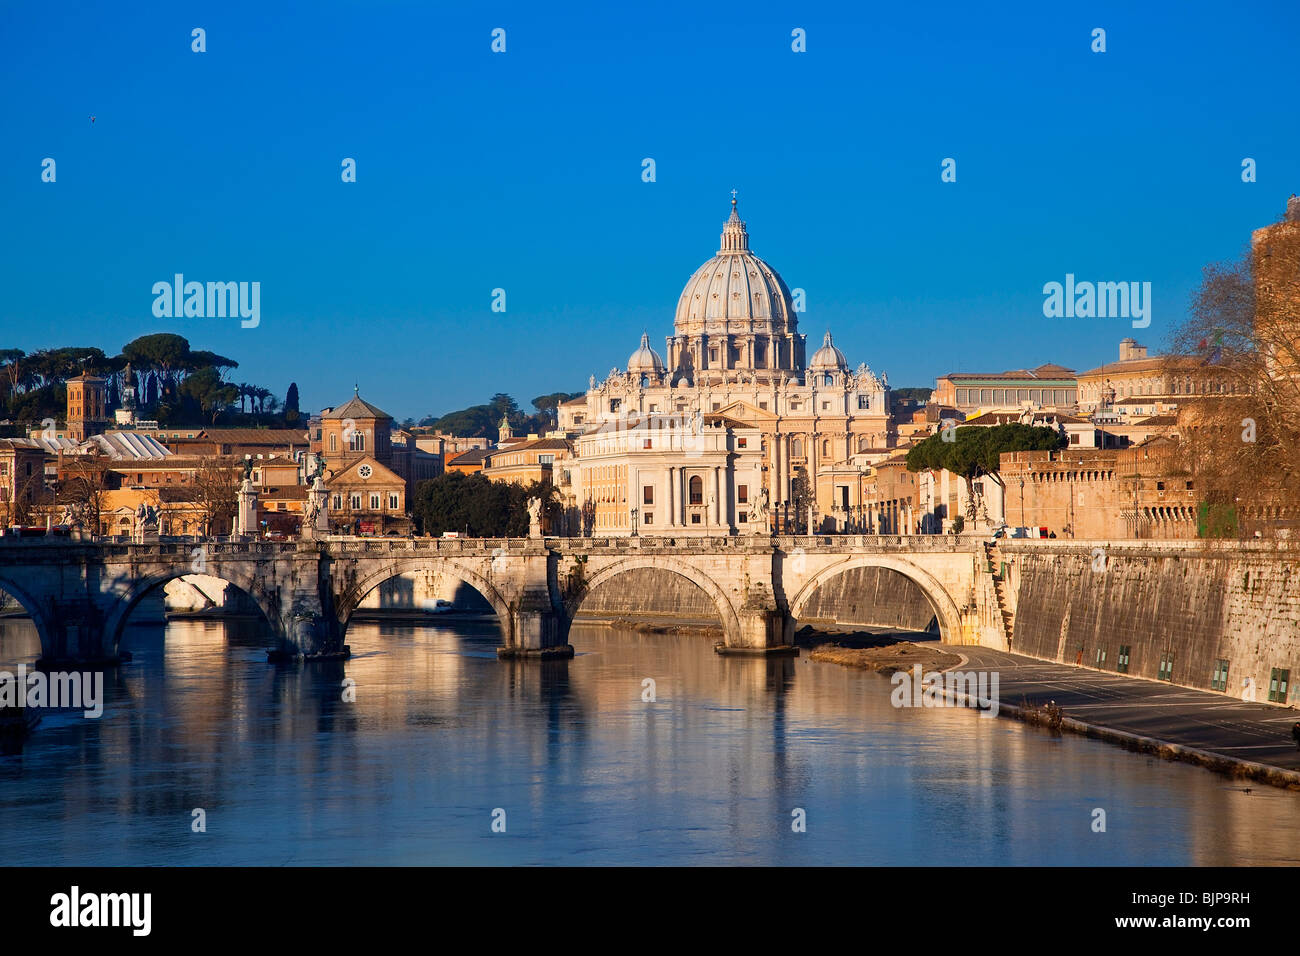 La Basilica di San Pietro e Sant' Angelo Bridge, Roma Foto Stock